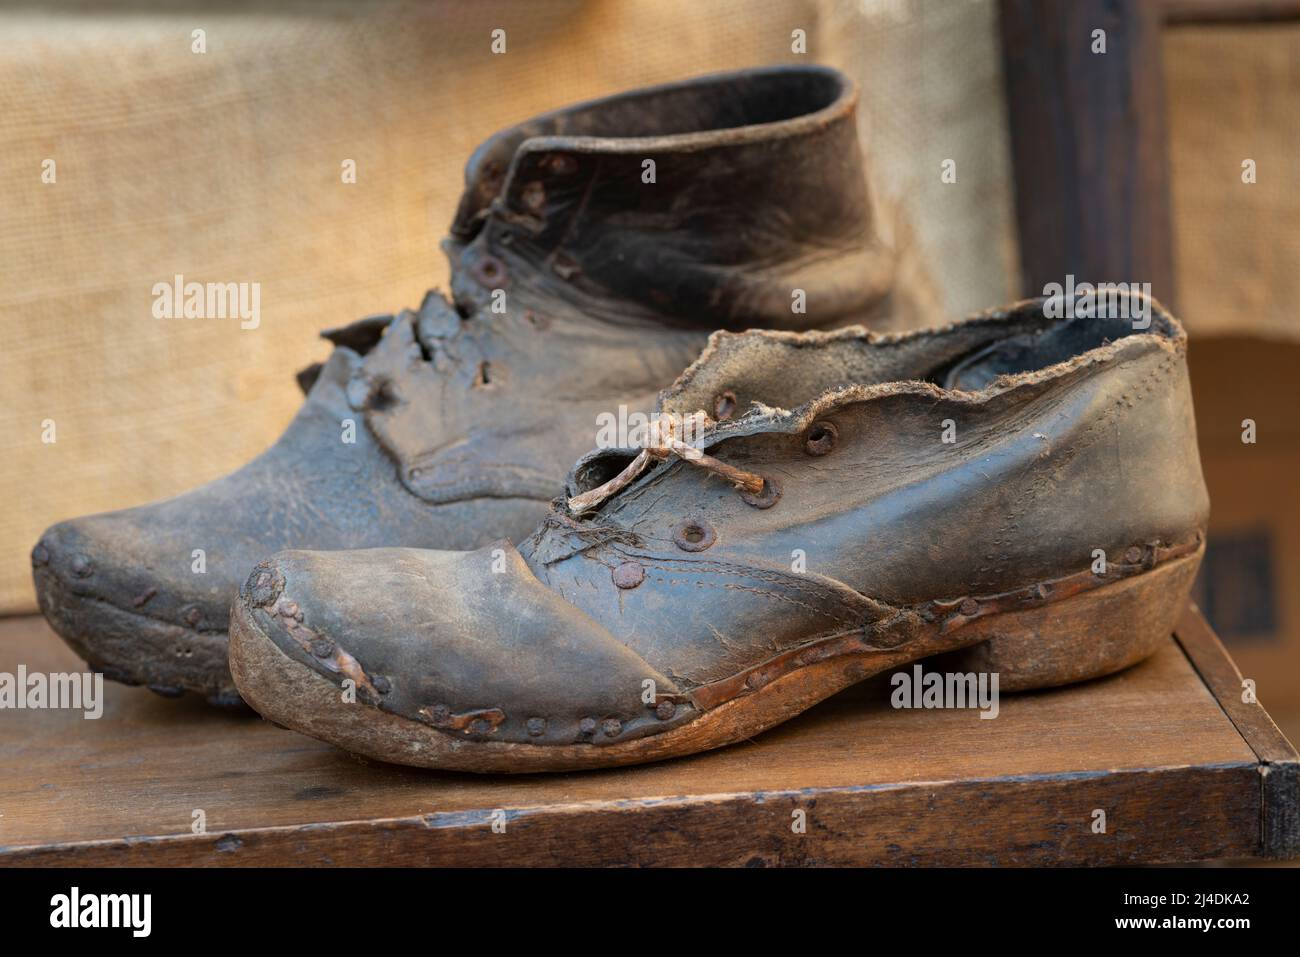 Italie, Lombardie, marché aux puces, chaussures en cuir ancien cassé Banque D'Images